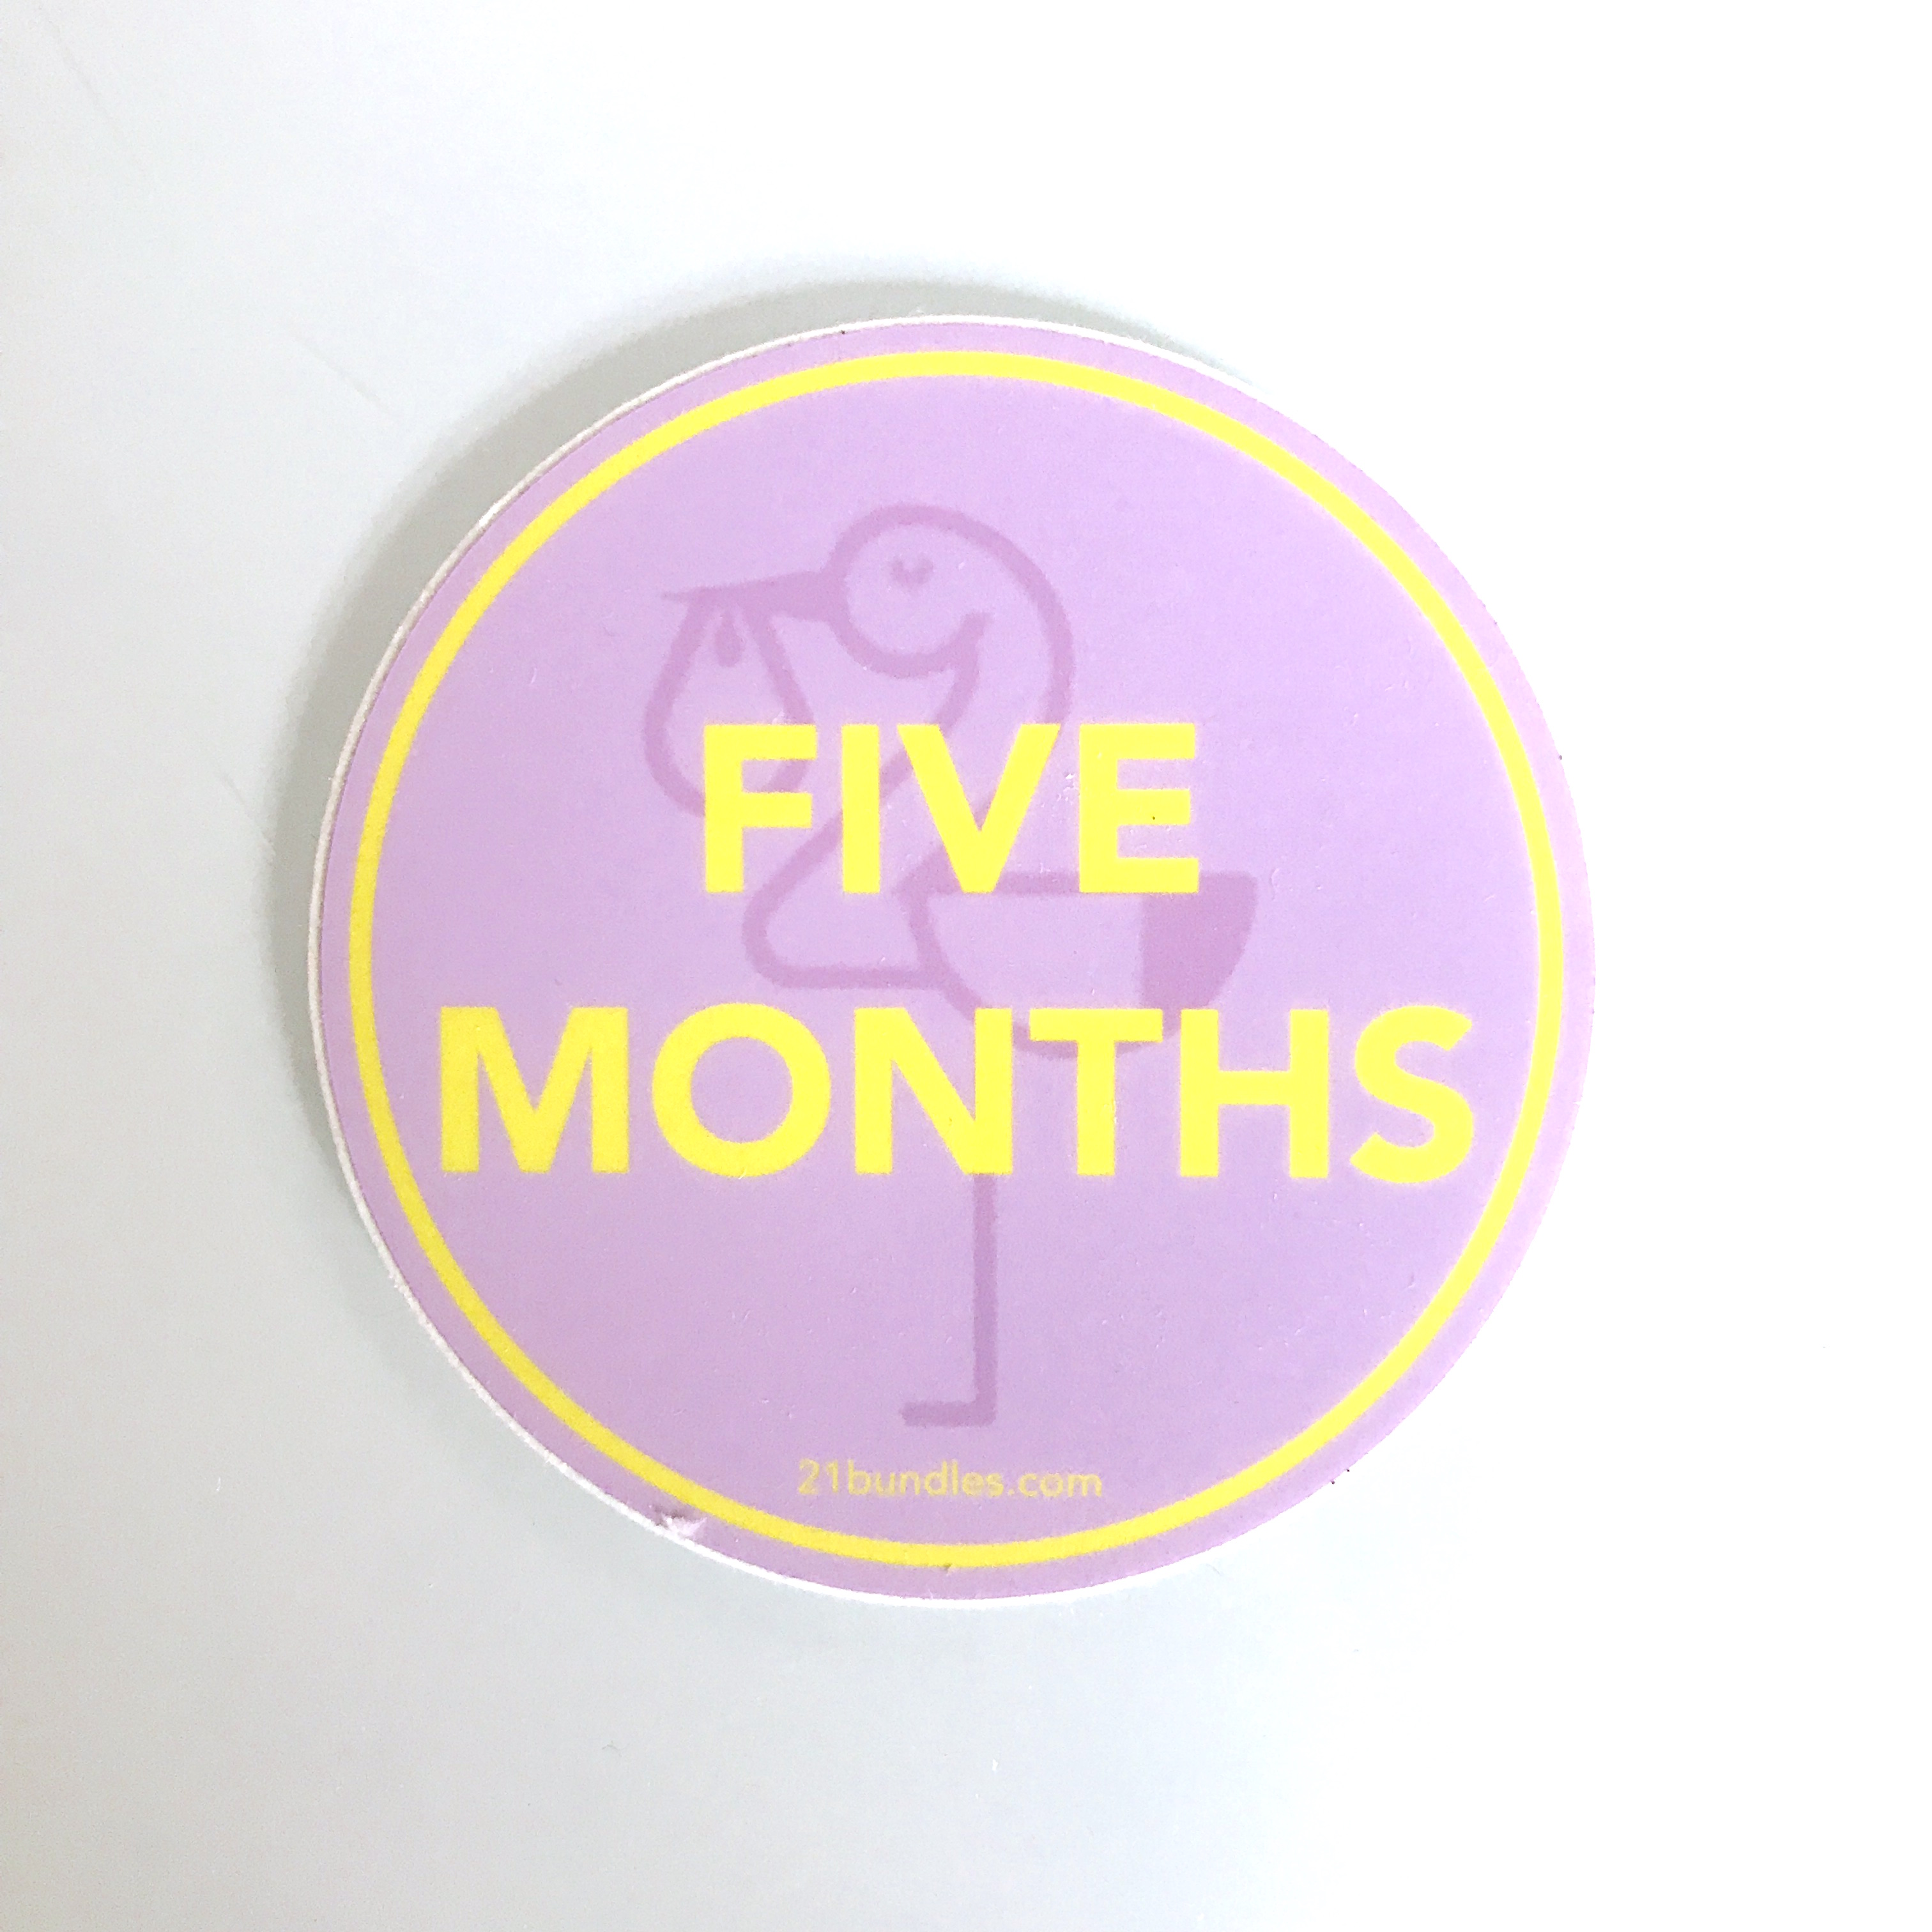 Healthiest Baby 21 Bundles February 2018 - 5 months sticker